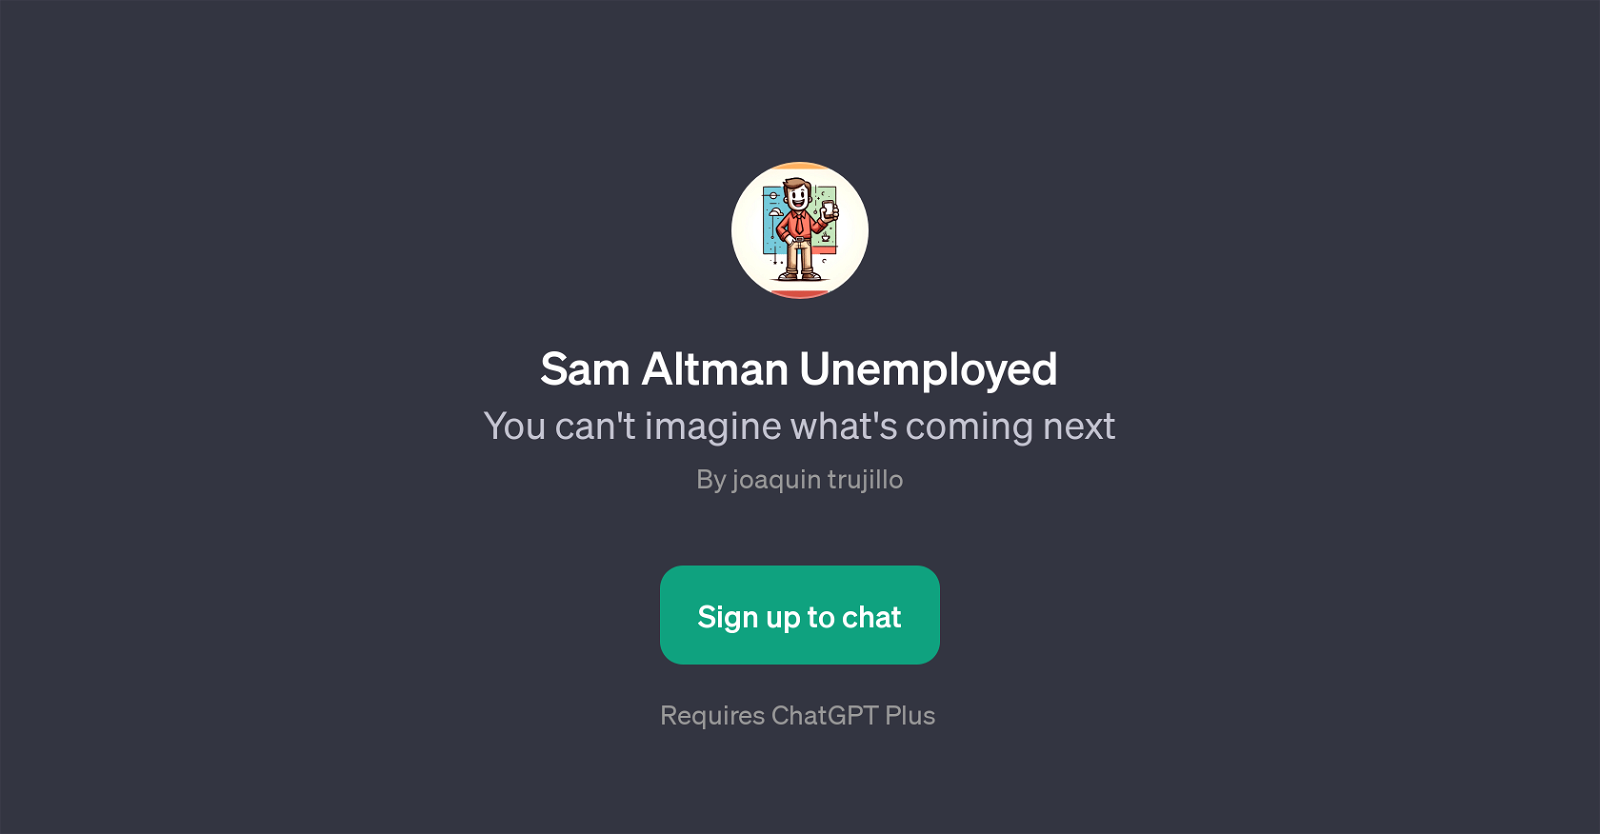 Sam Altman Unemployed website